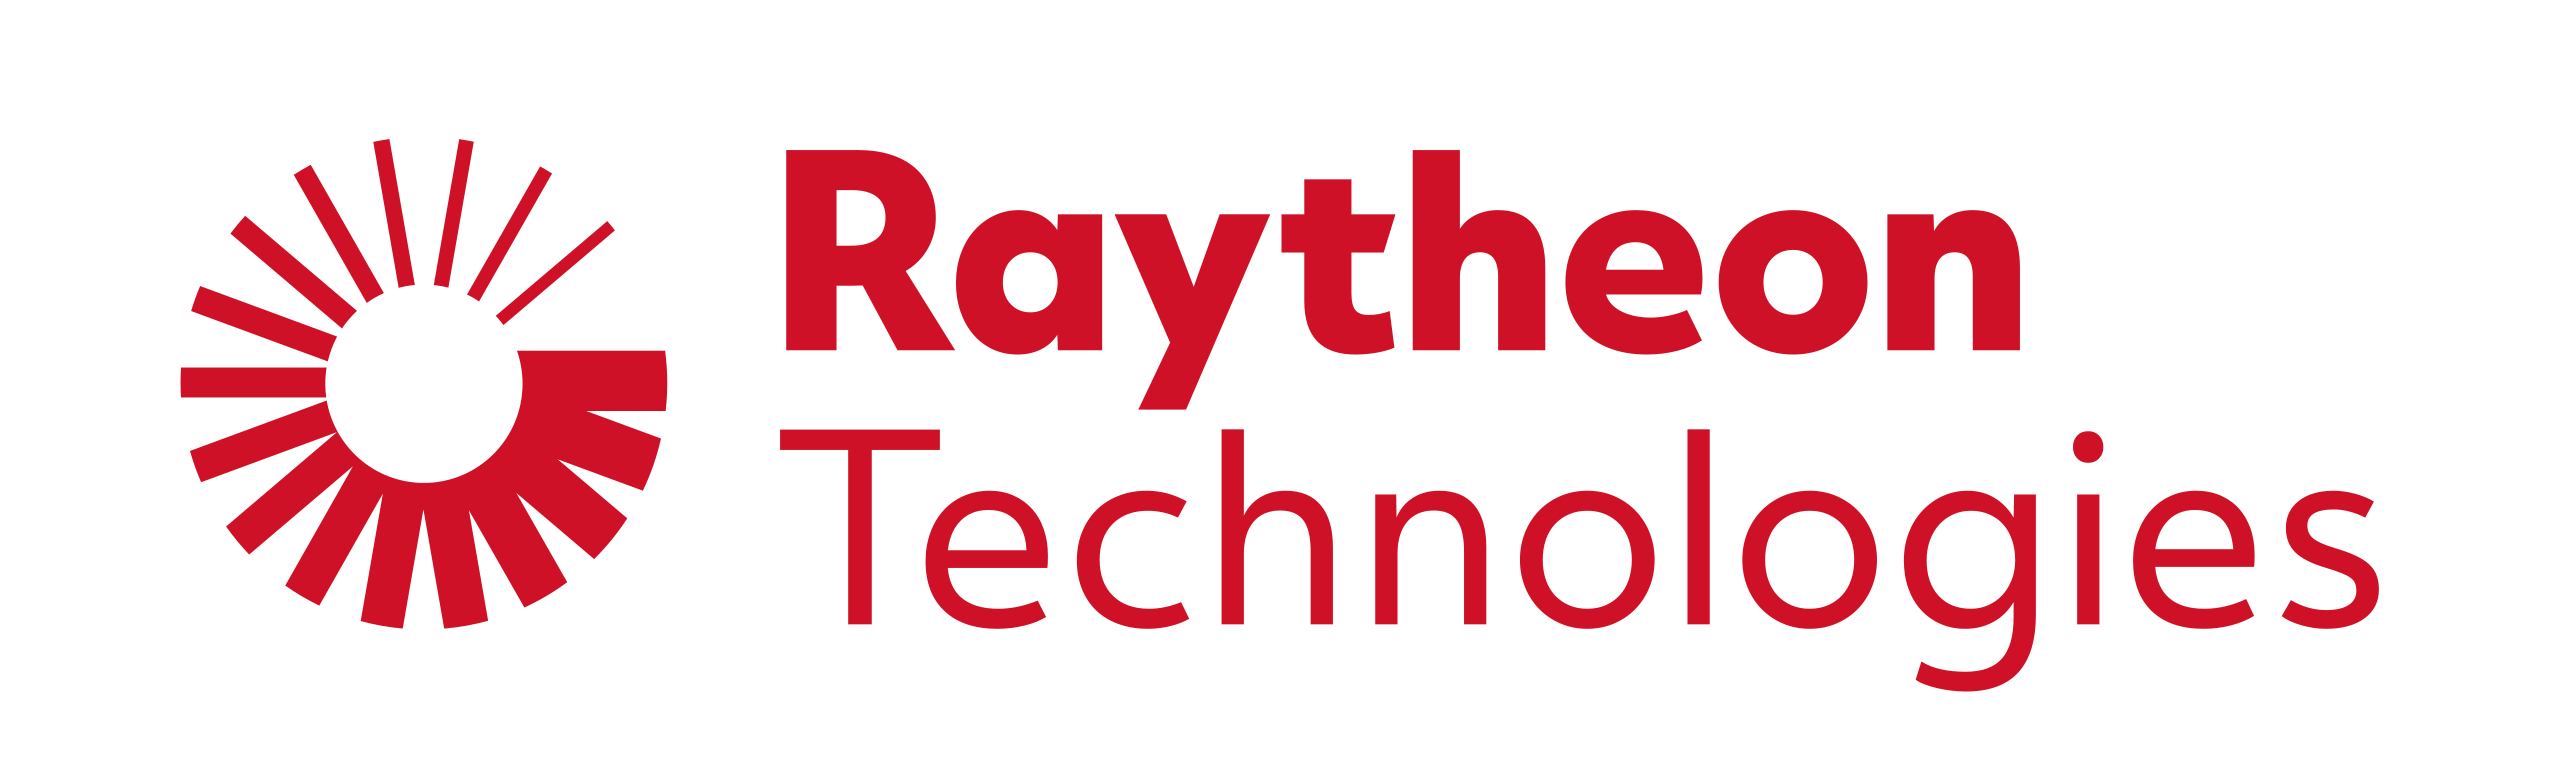 Raytheon Technology logo